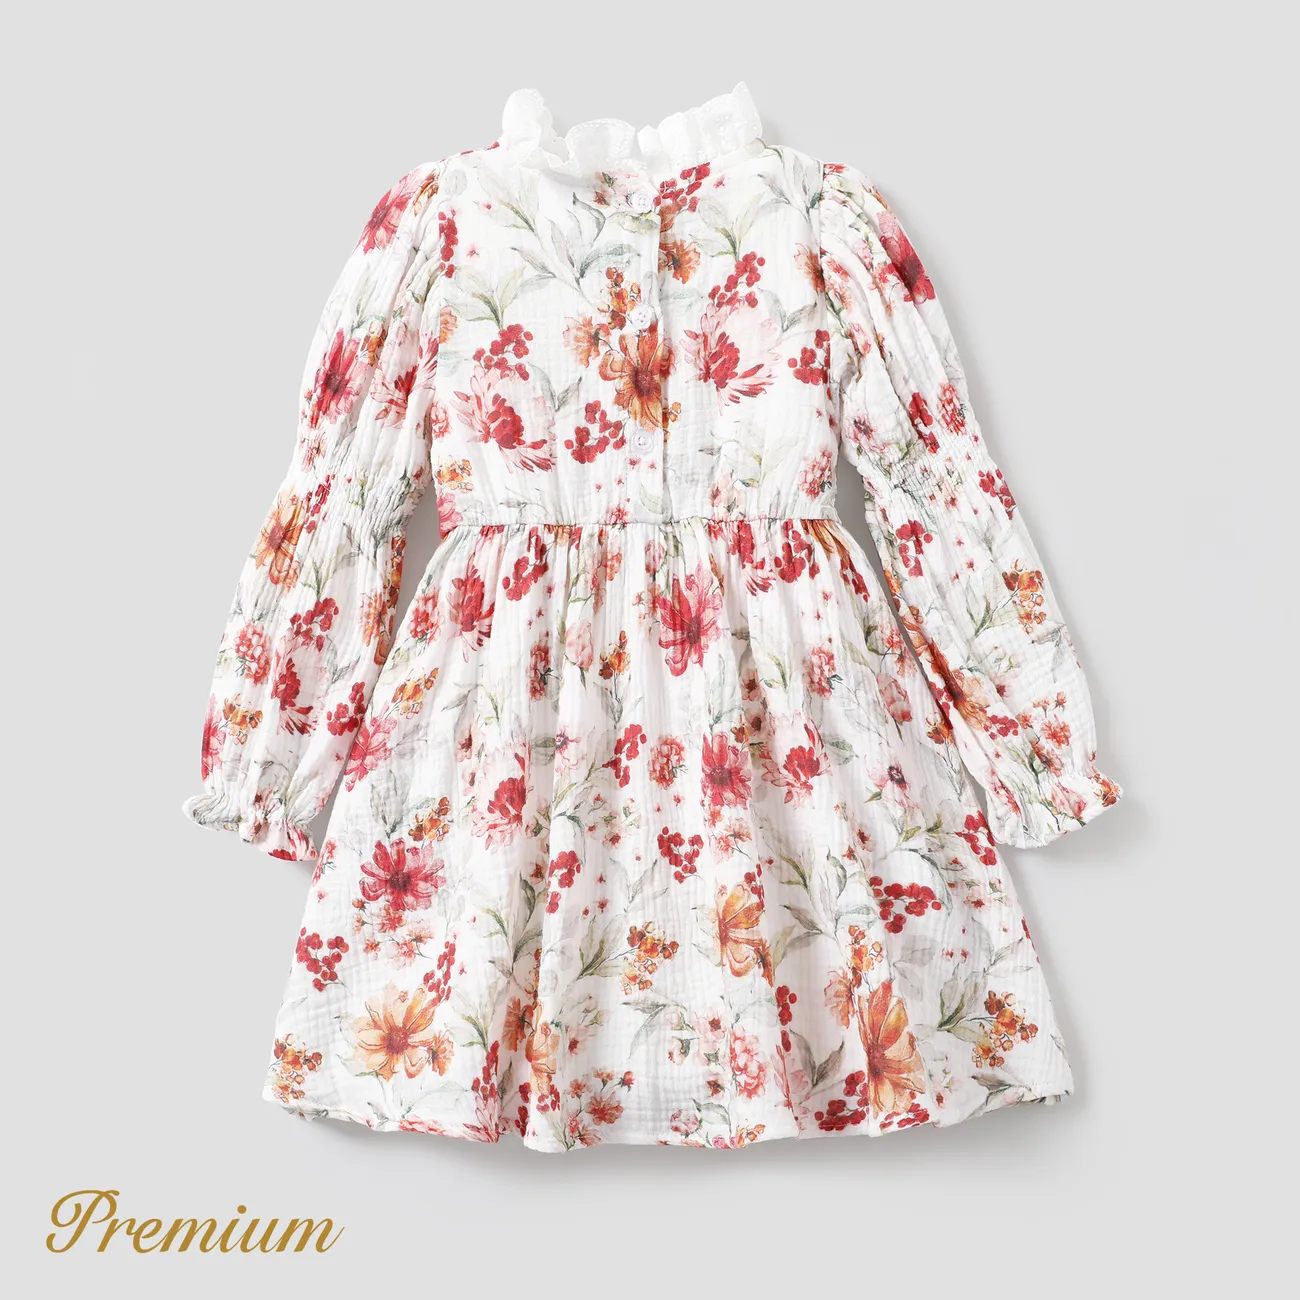 Kleinkind/Kind Mädchen Elegantes gesmoktes Kleid mit Blumendruck Mehrfarben big image 1